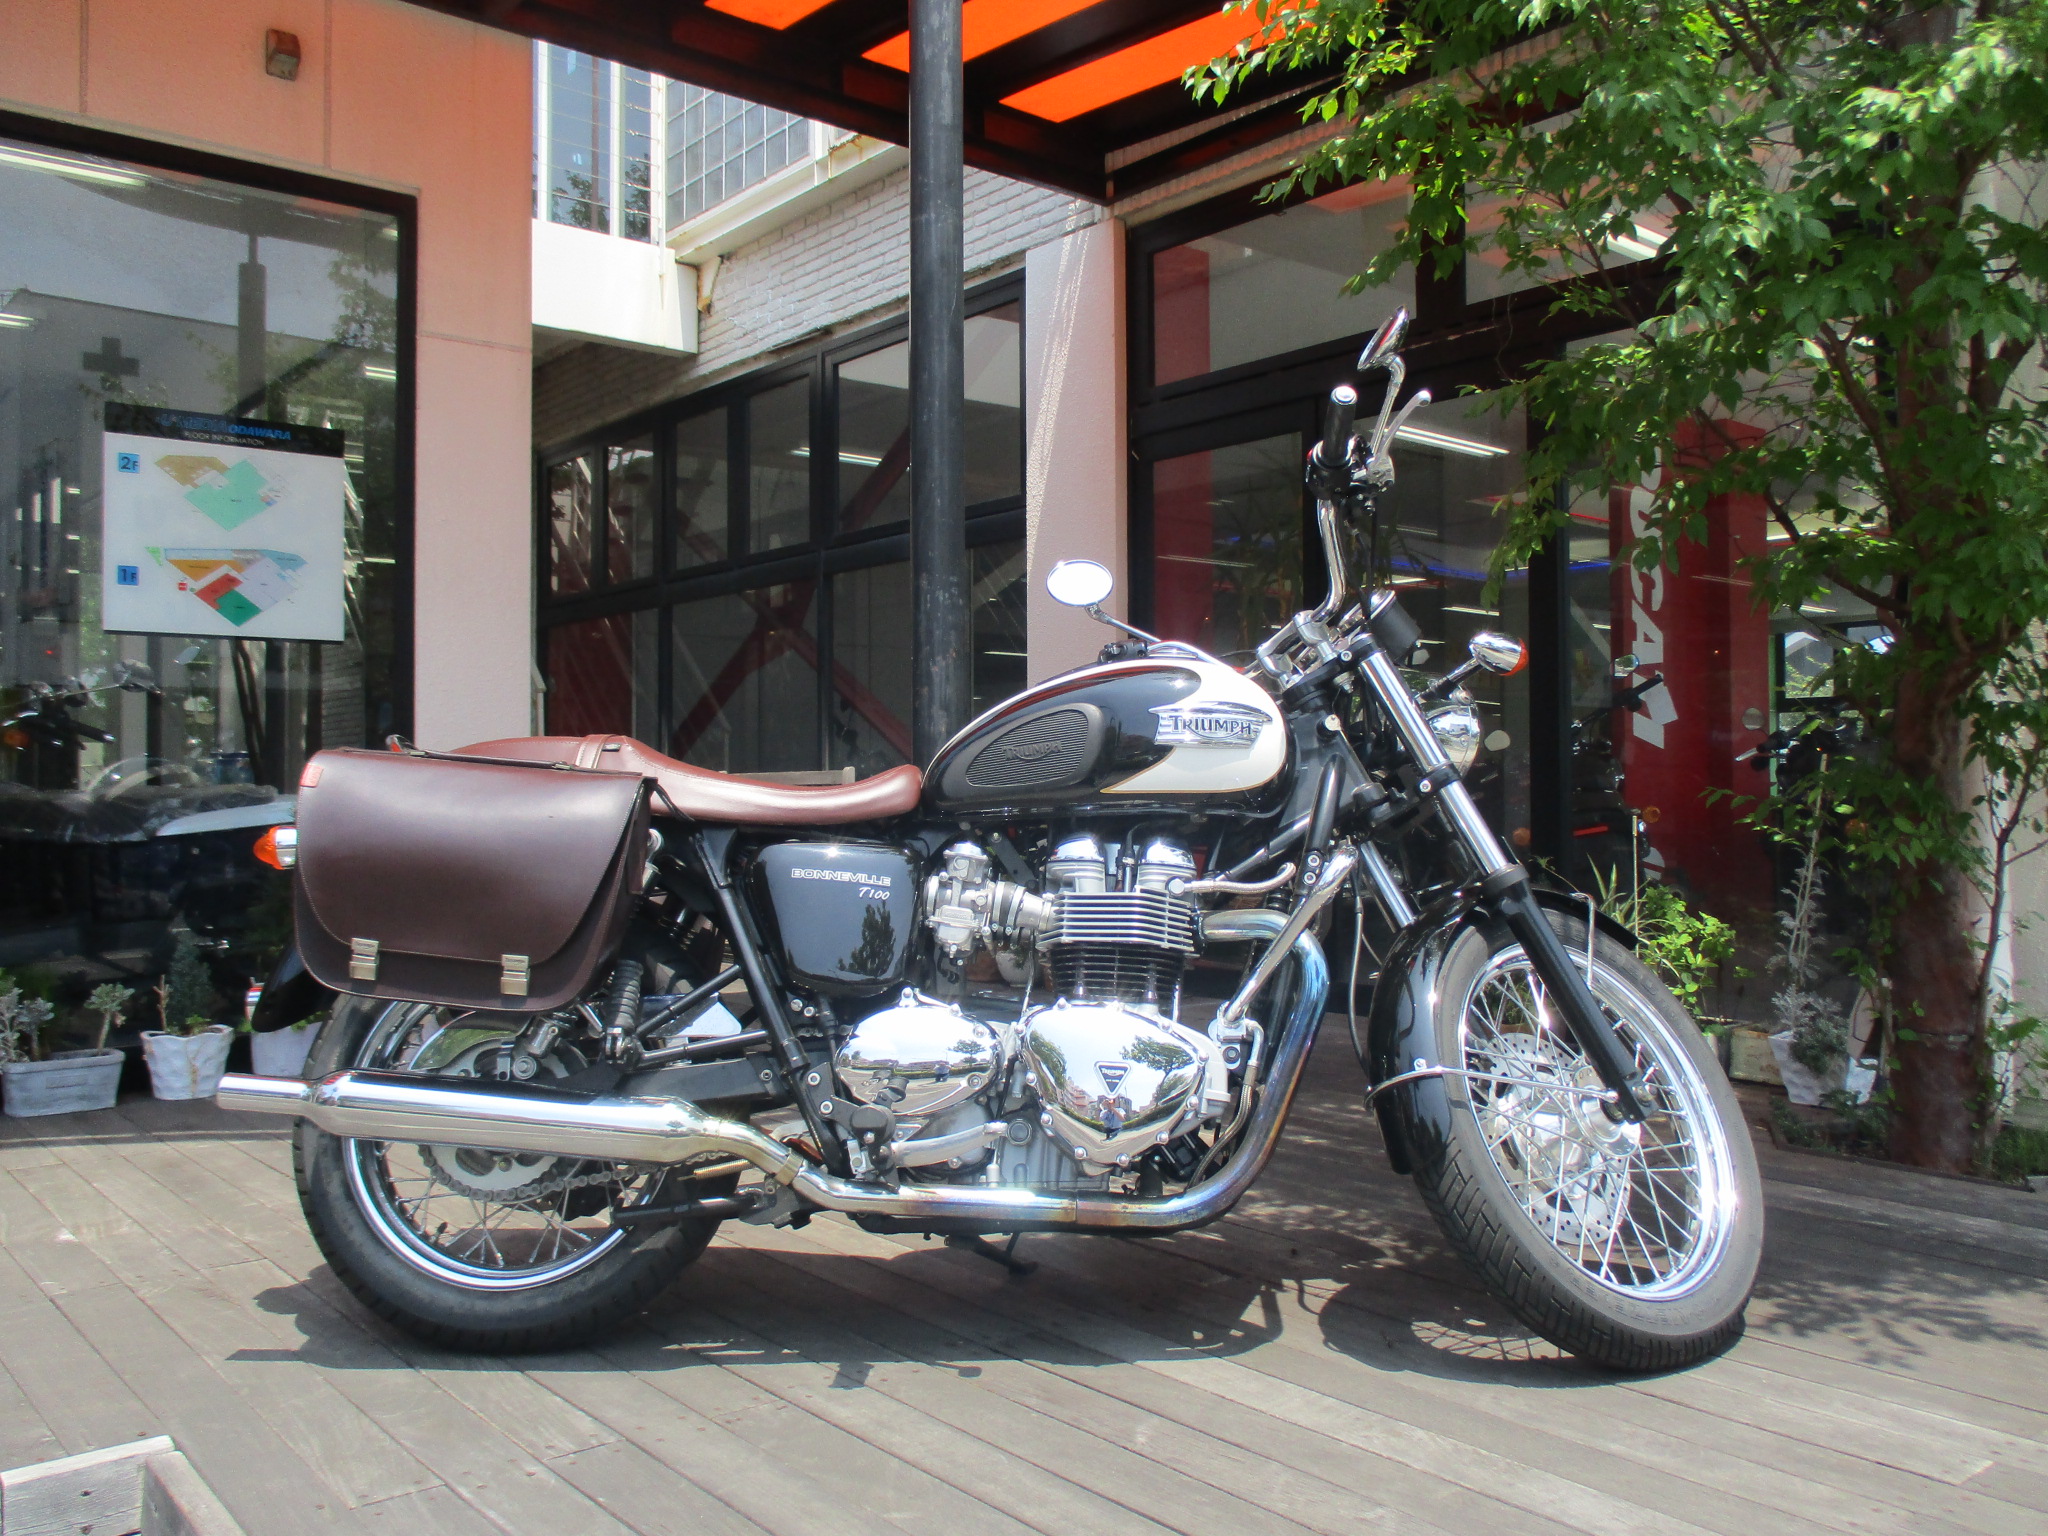 トライアンフの中古車をご紹介します 最新情報 U Media ユーメディア 中古バイク 新車バイク 探しの決定版 神奈川 東京でバイク探すならユーメディア